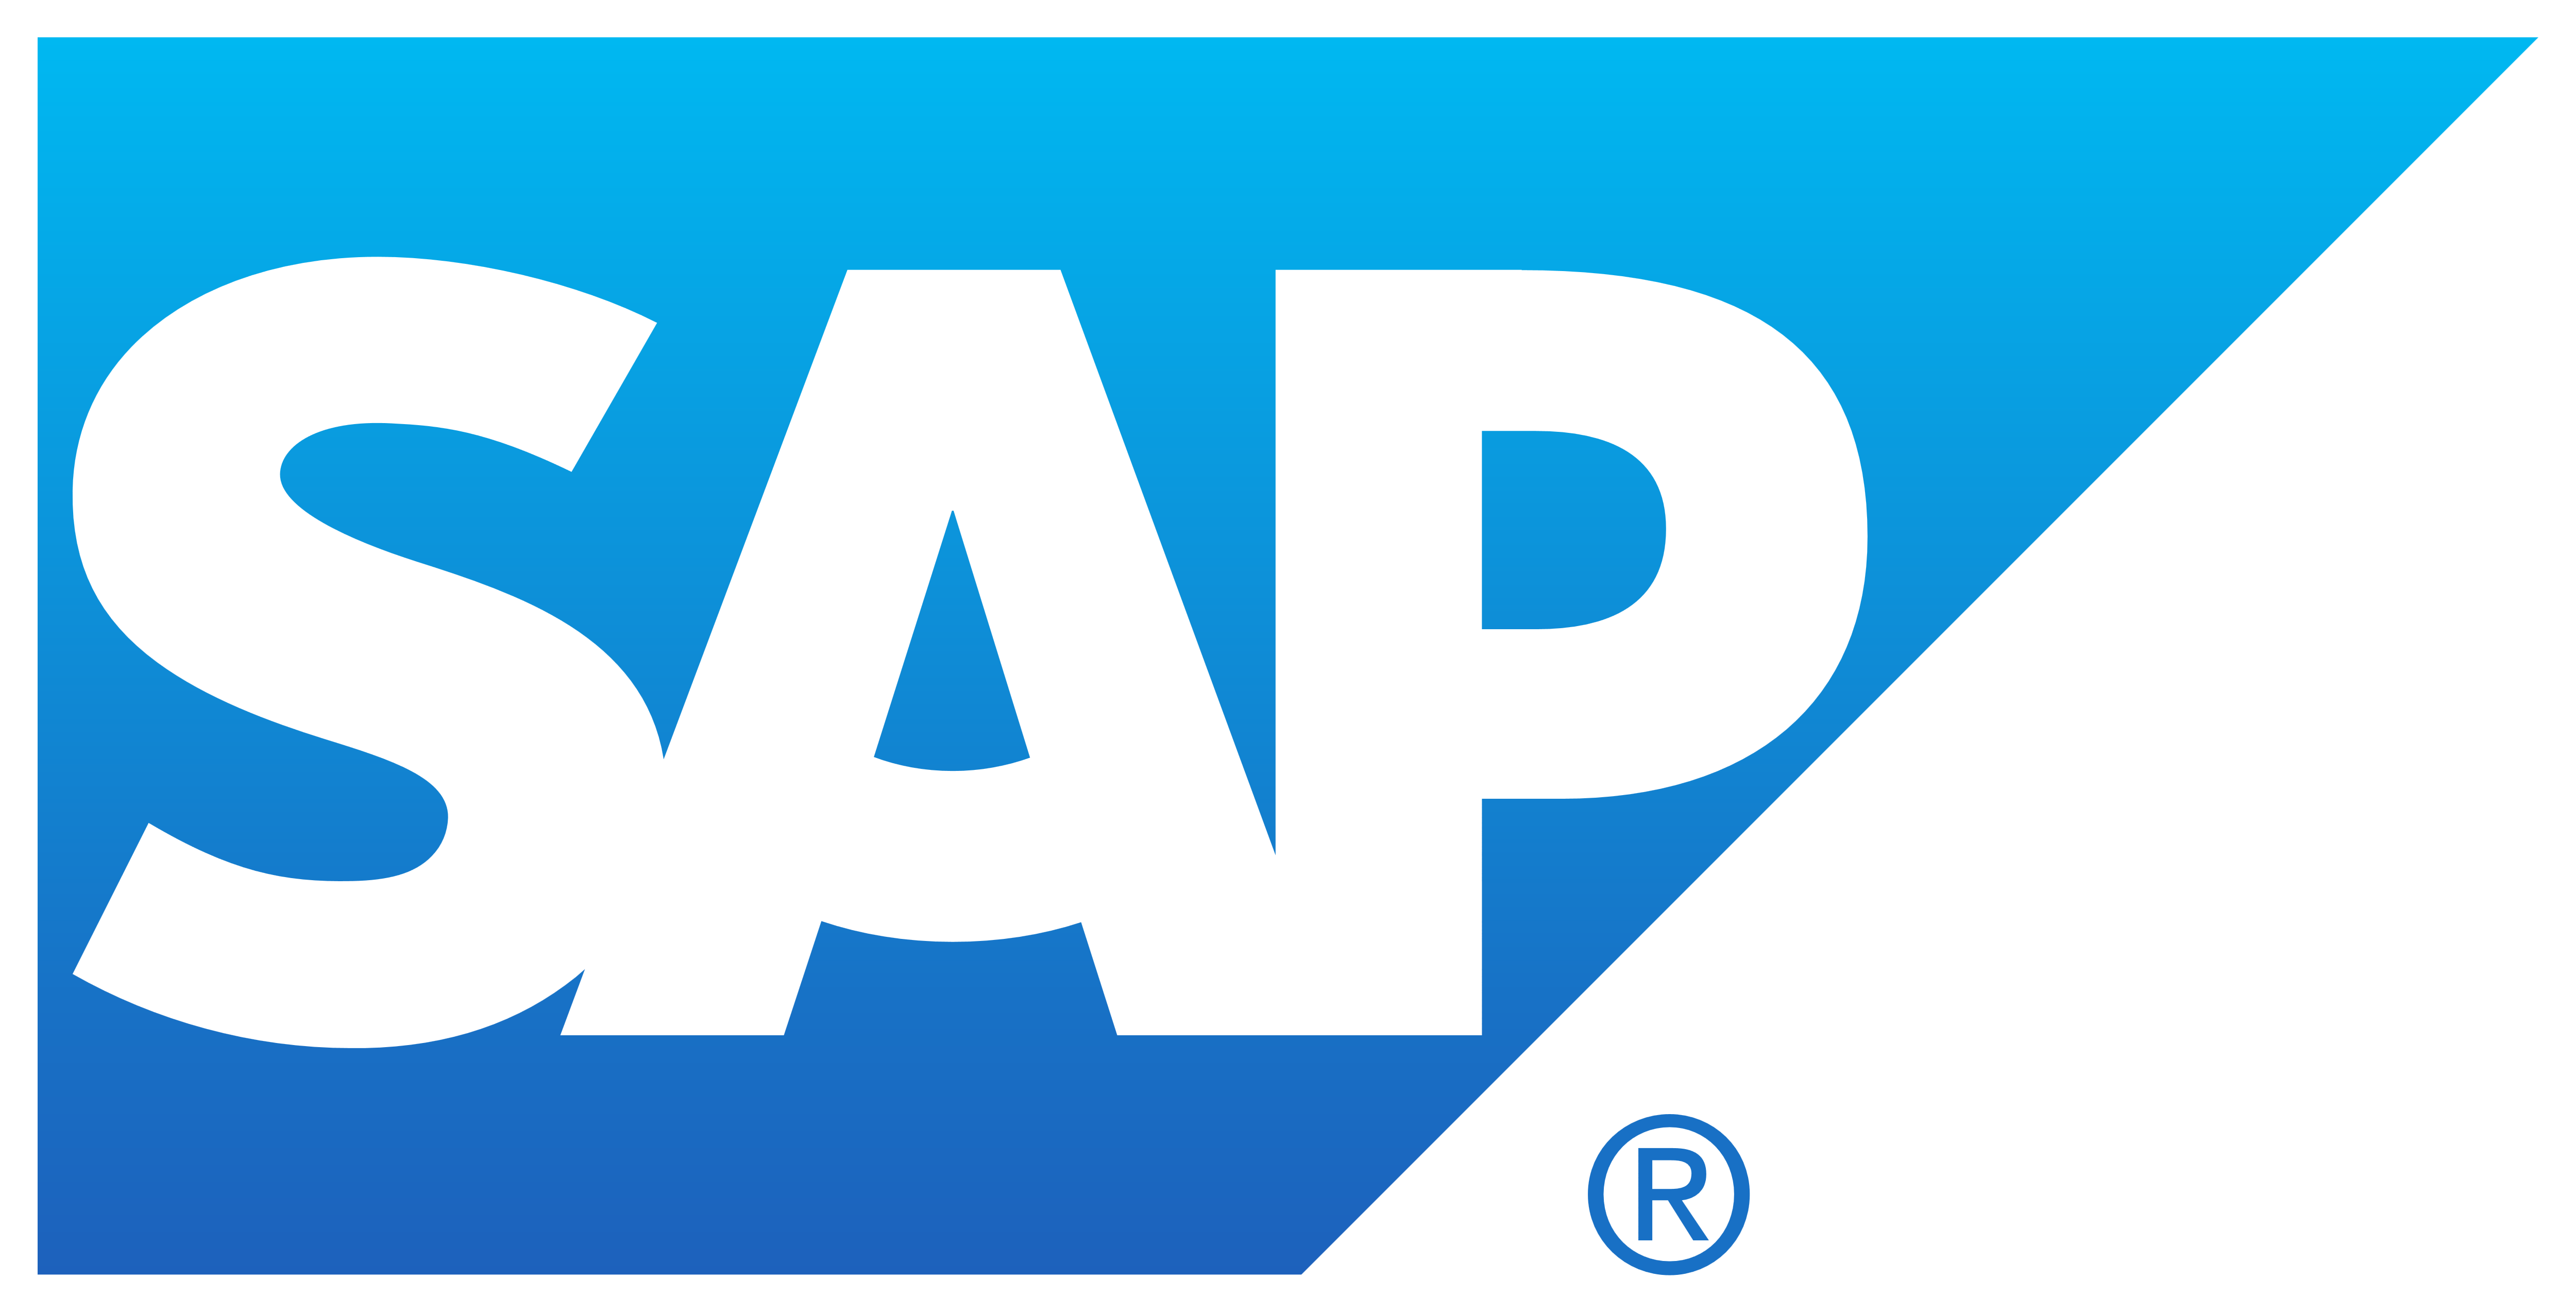 SAP – Logos Download